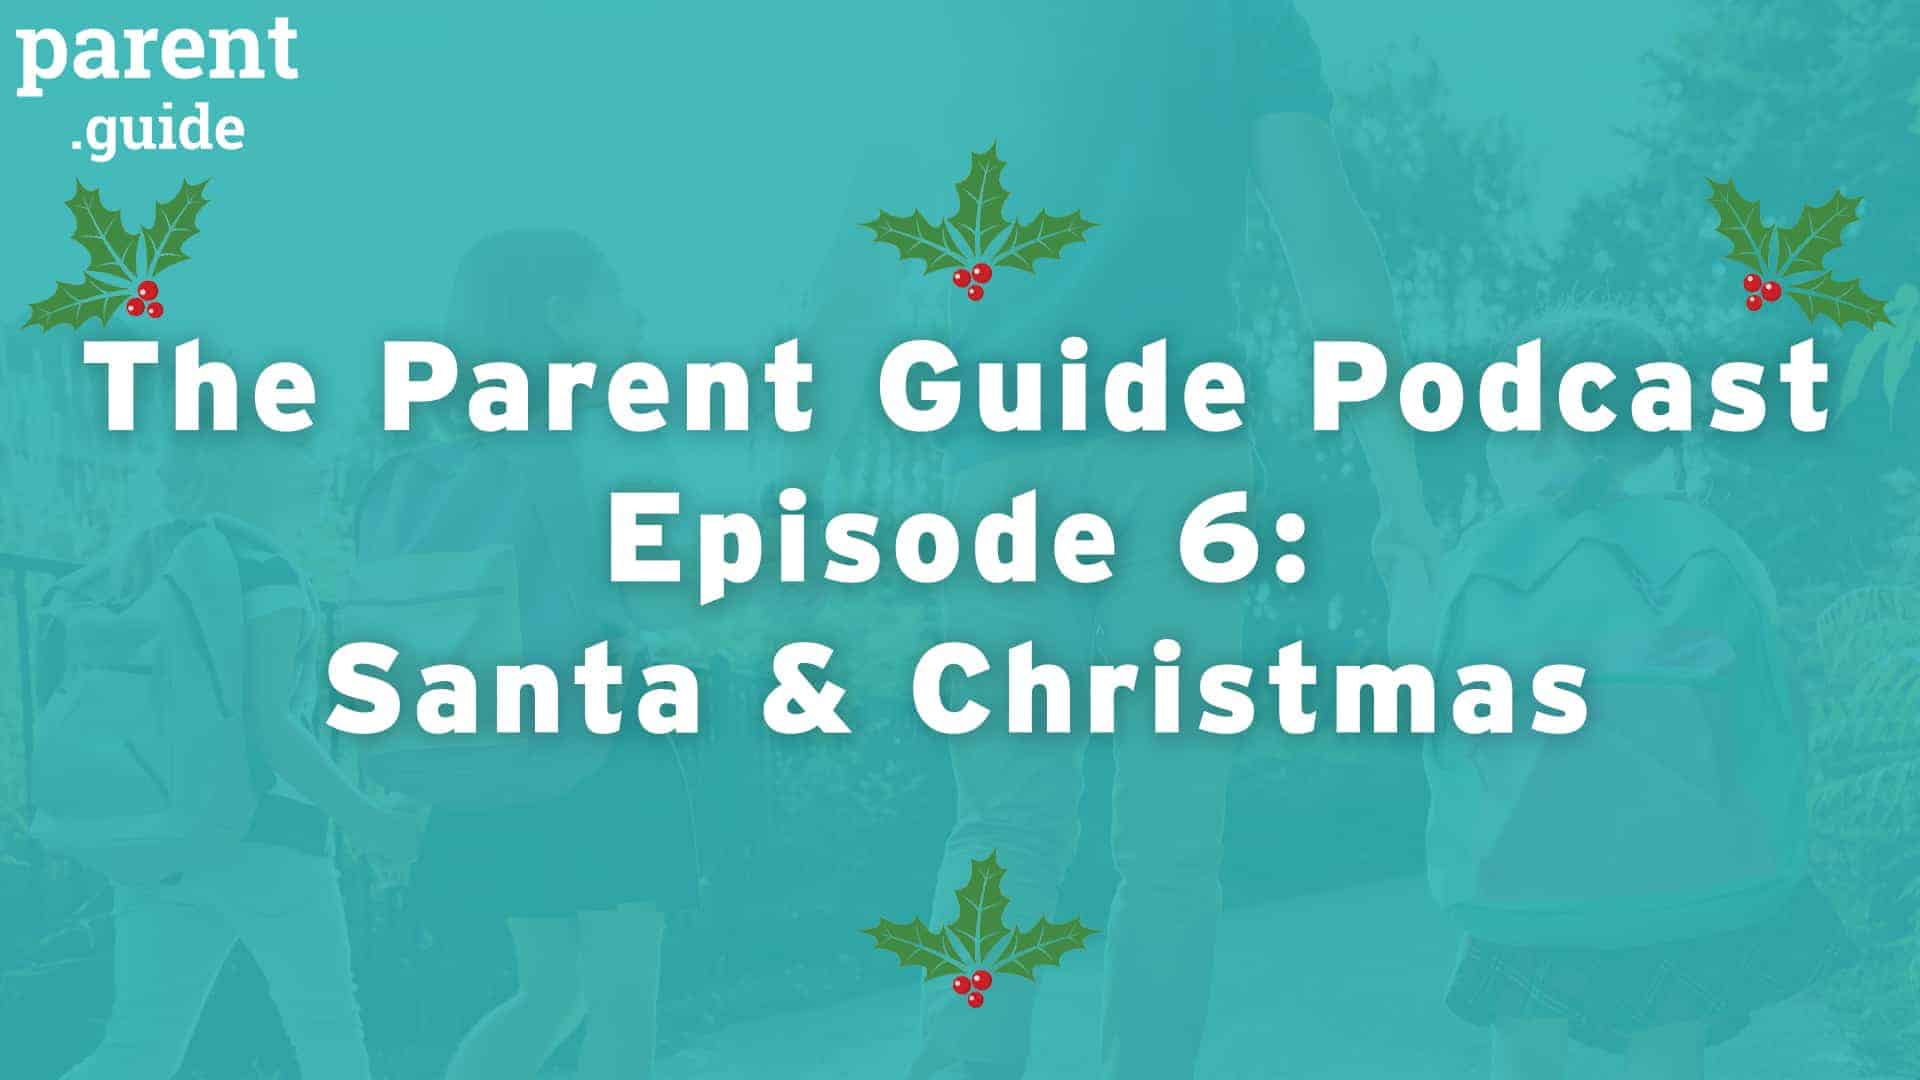 Parent Guide Podcast Episode 6: Santa & Christmas